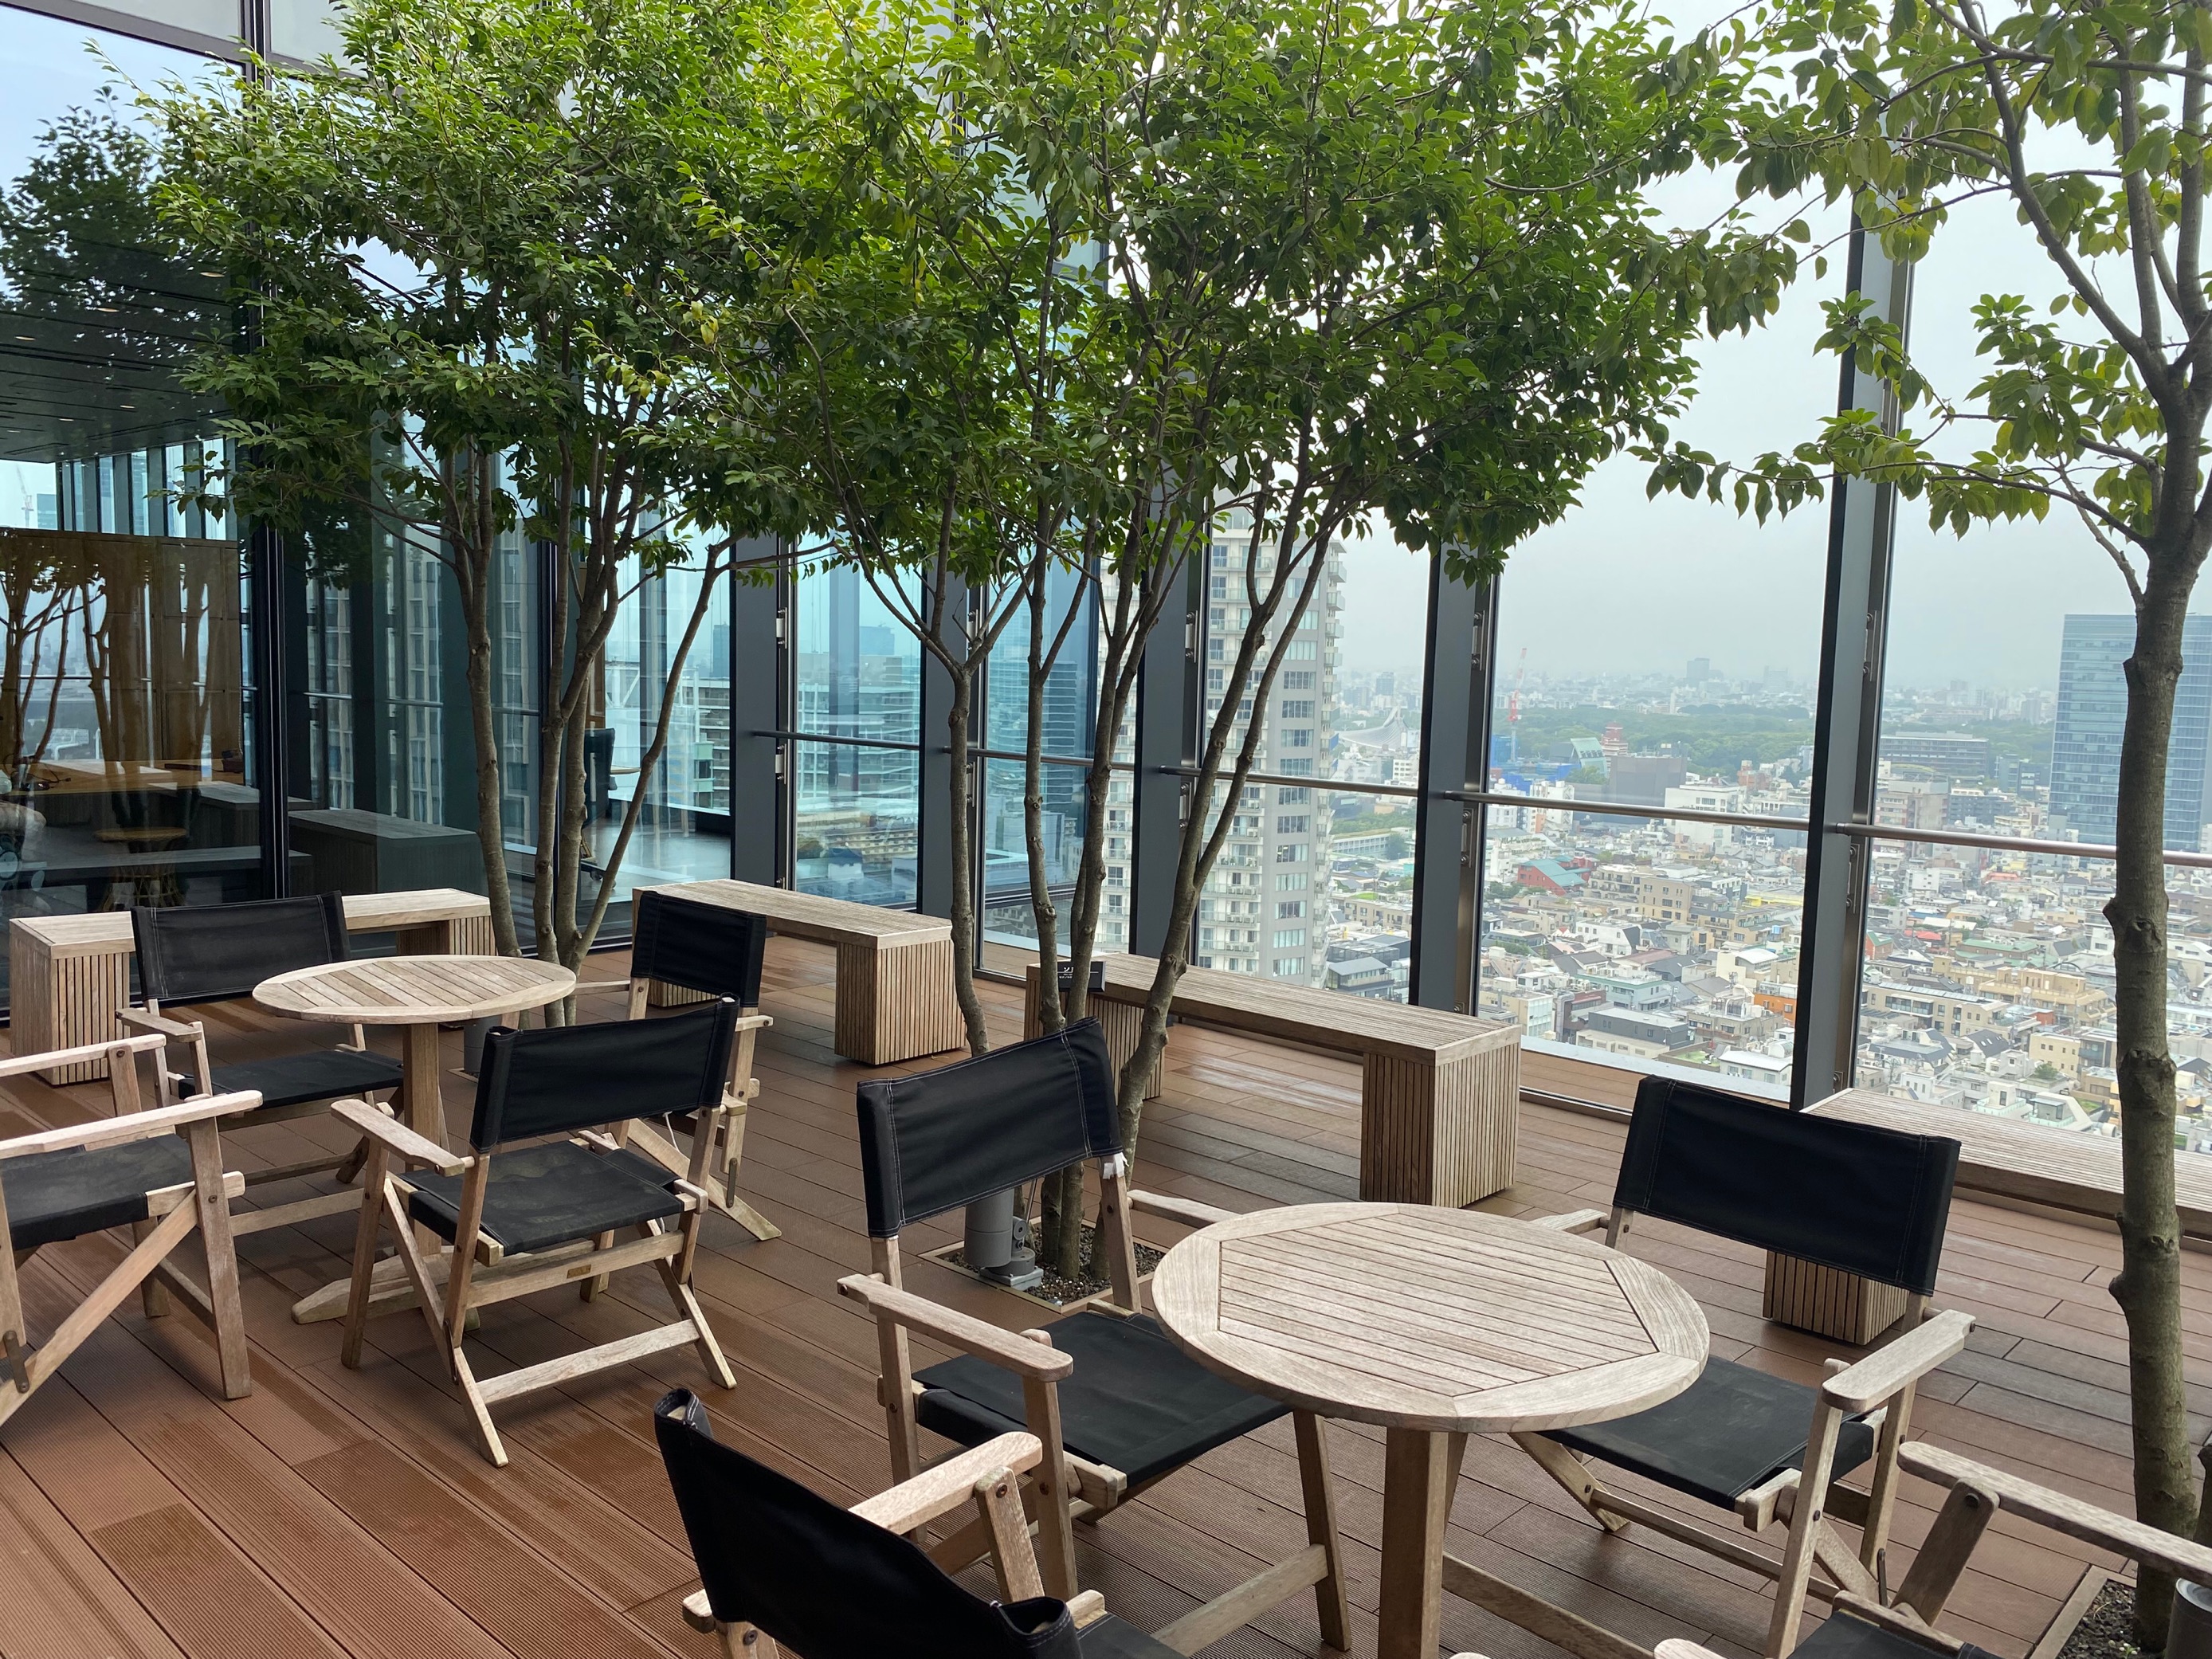 当社のオフィスビル最上階は遠くには富士山までを見渡せる景観！開放的全てのグループ社員が打合せ、食事が出来るカフェ、フィットネスジムも自社内に設けています。楽しいオフィスで一緒に働きませんか？